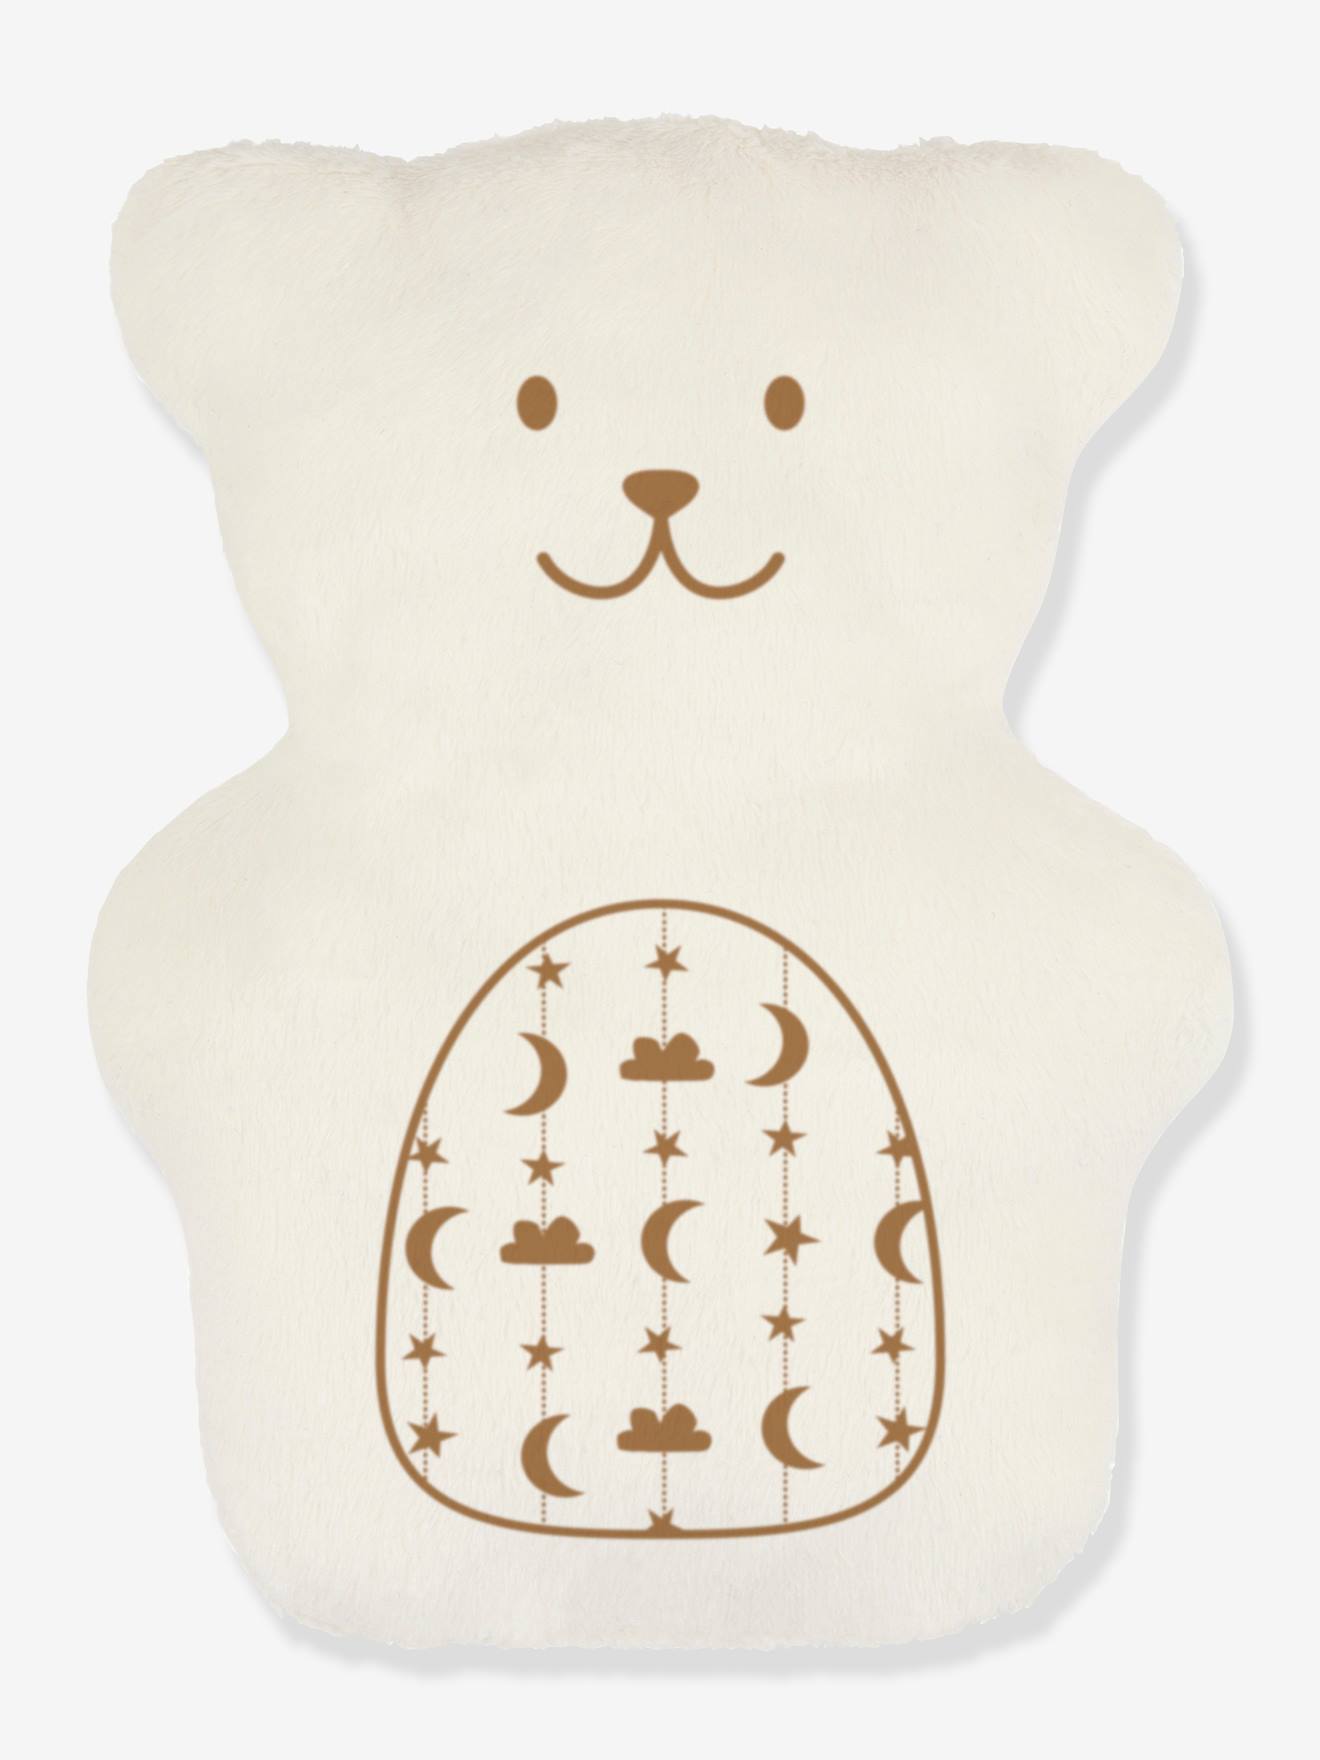 BEKE BOBO therapeutische teddybeer beige (abracadabra)